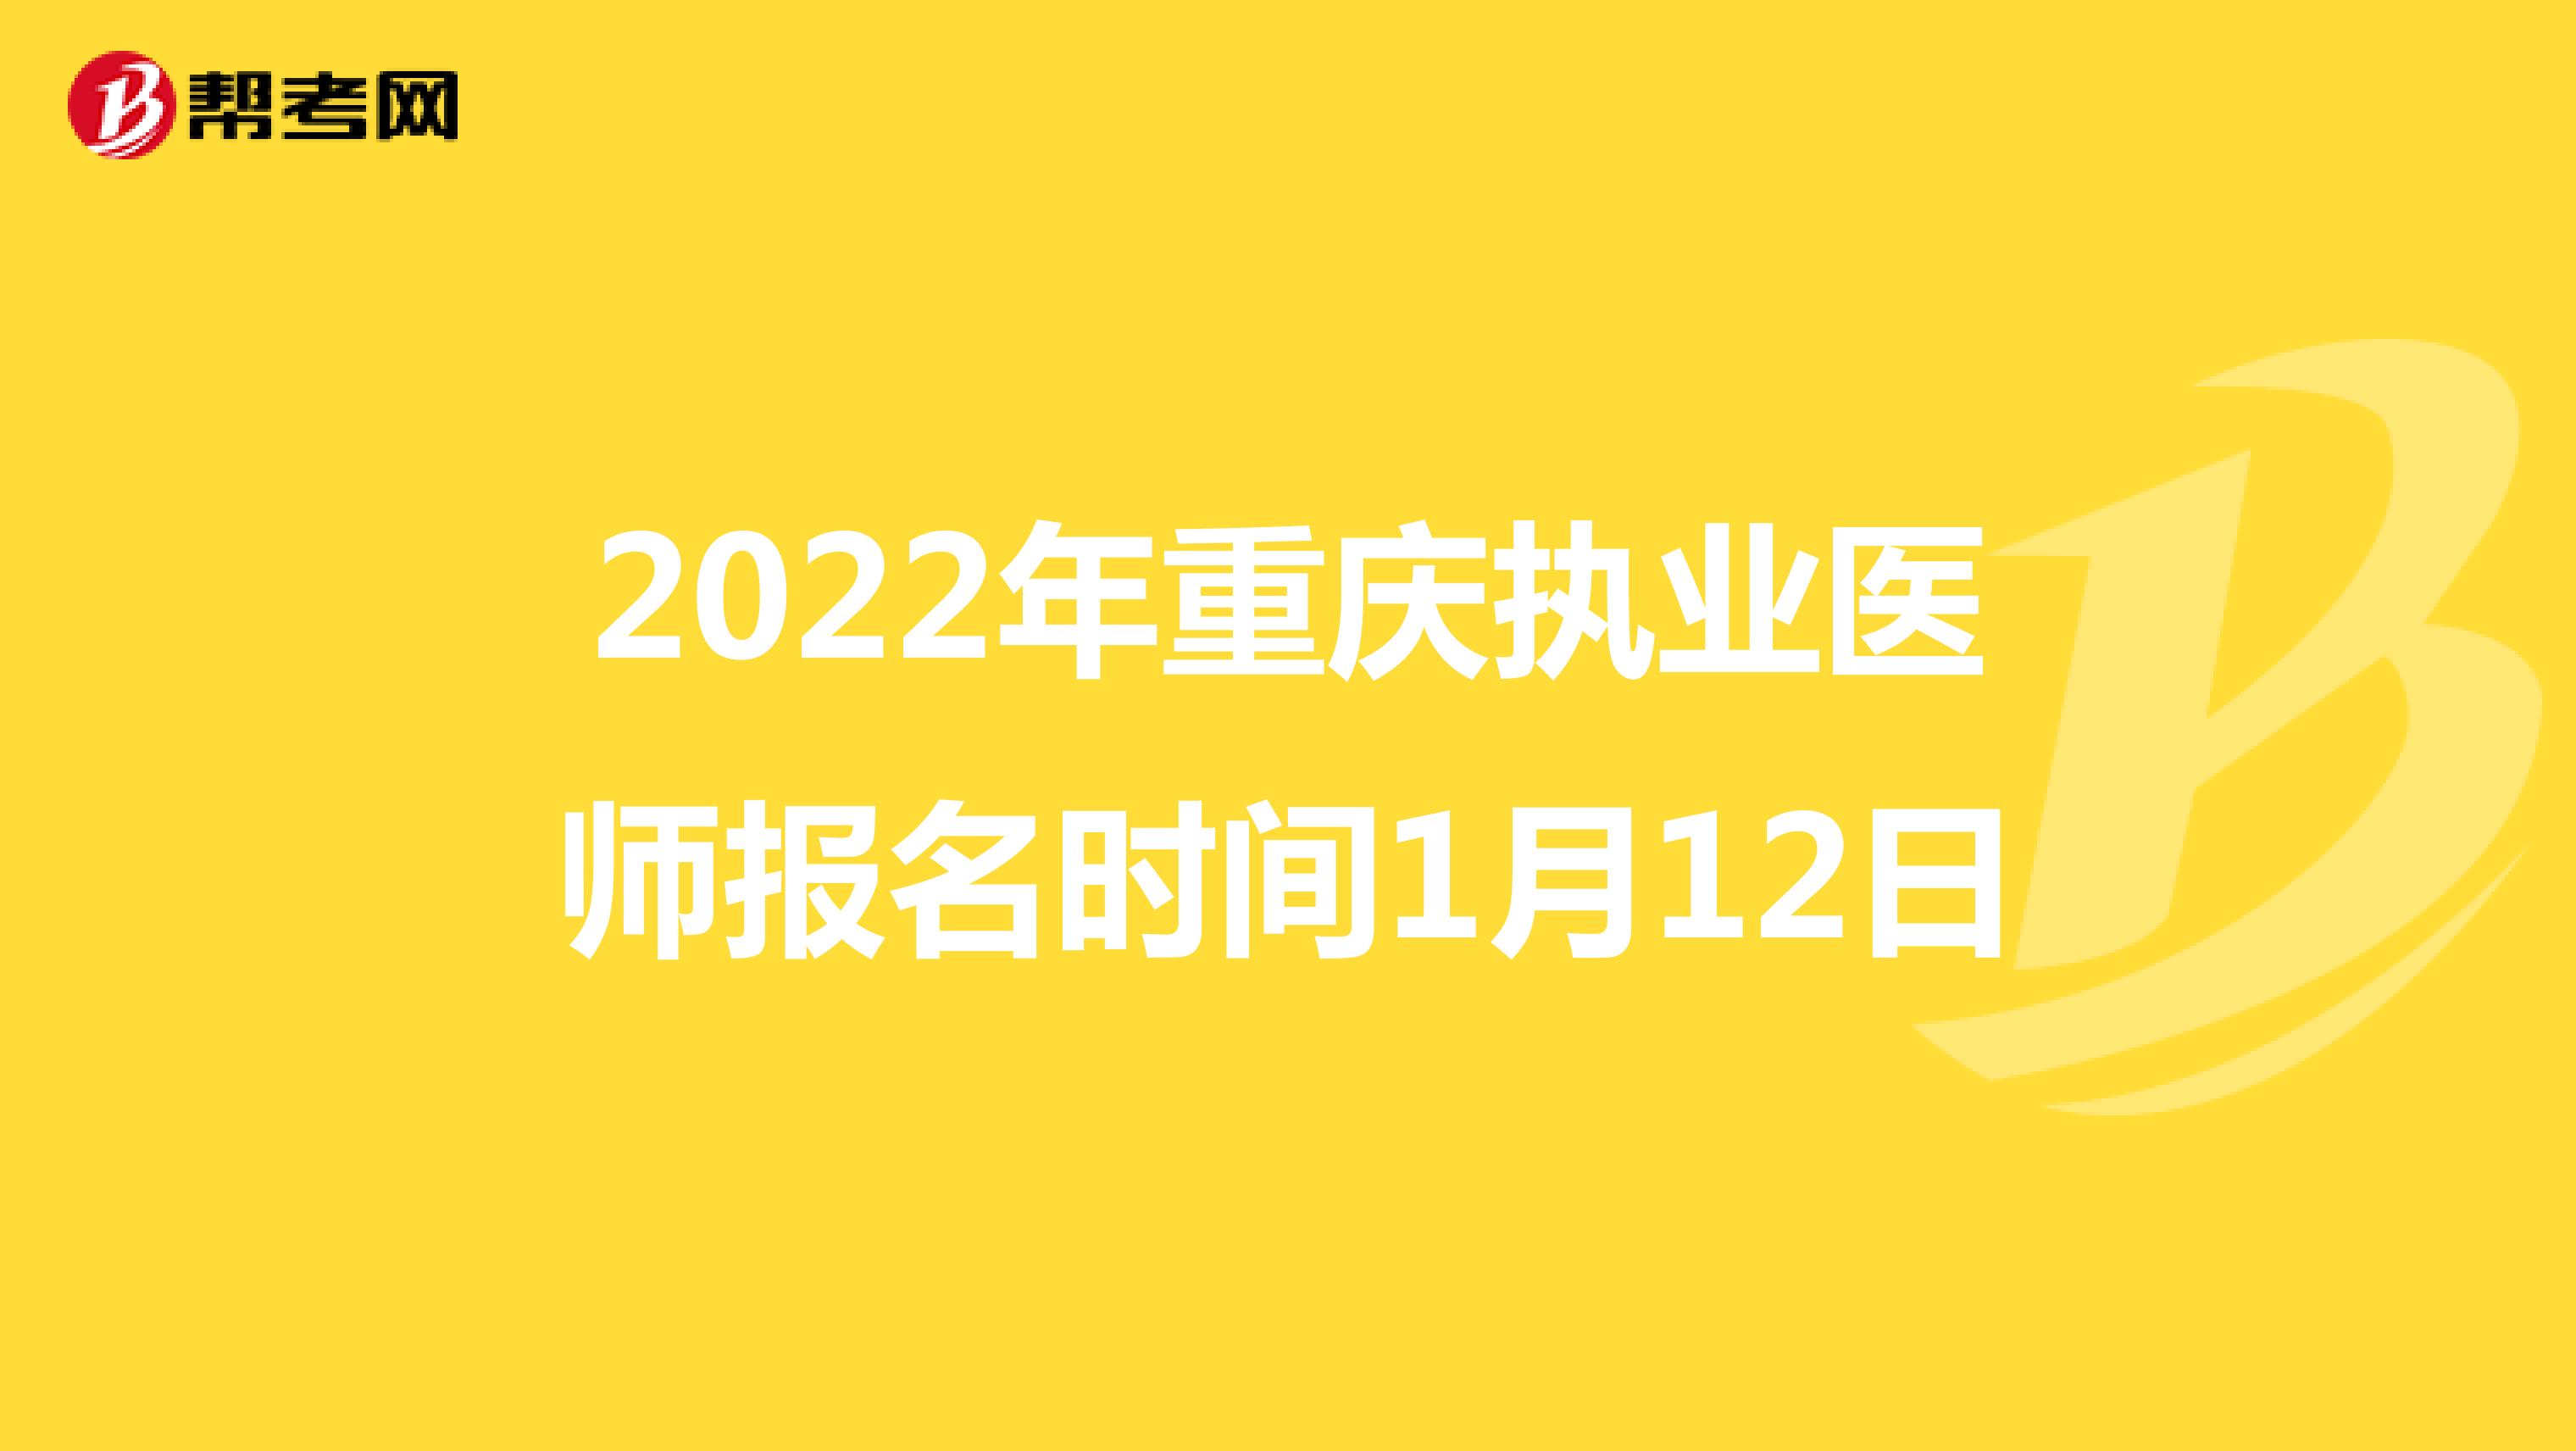 2022年重庆执业医师报名时间1月12日